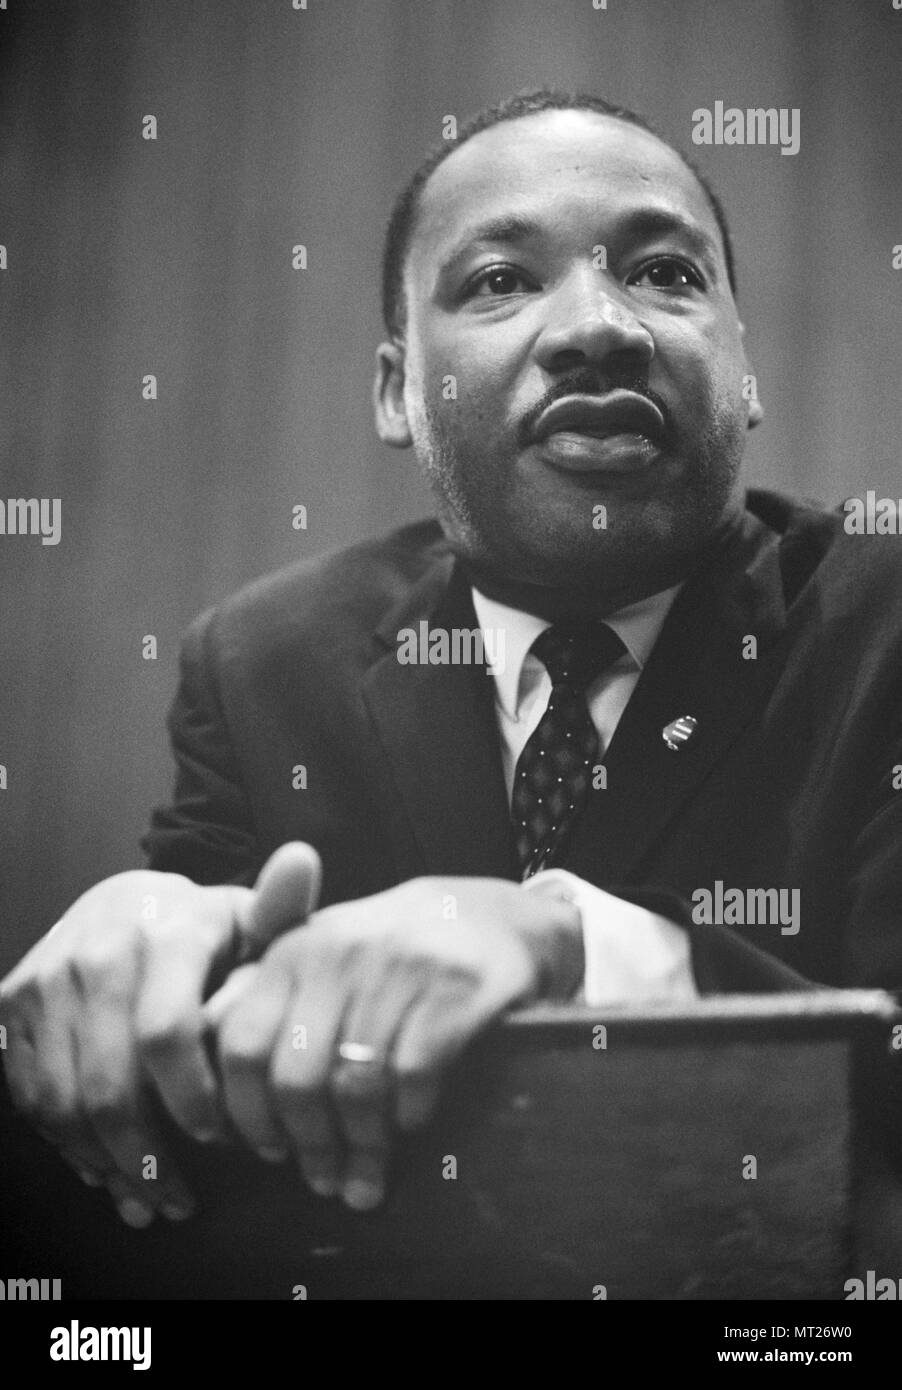 Martin Luther King à la conférence de presse le 26 mars 1964 à Washington, D.C. après le débat au Sénat sur le projet de loi des droits civils. Banque D'Images